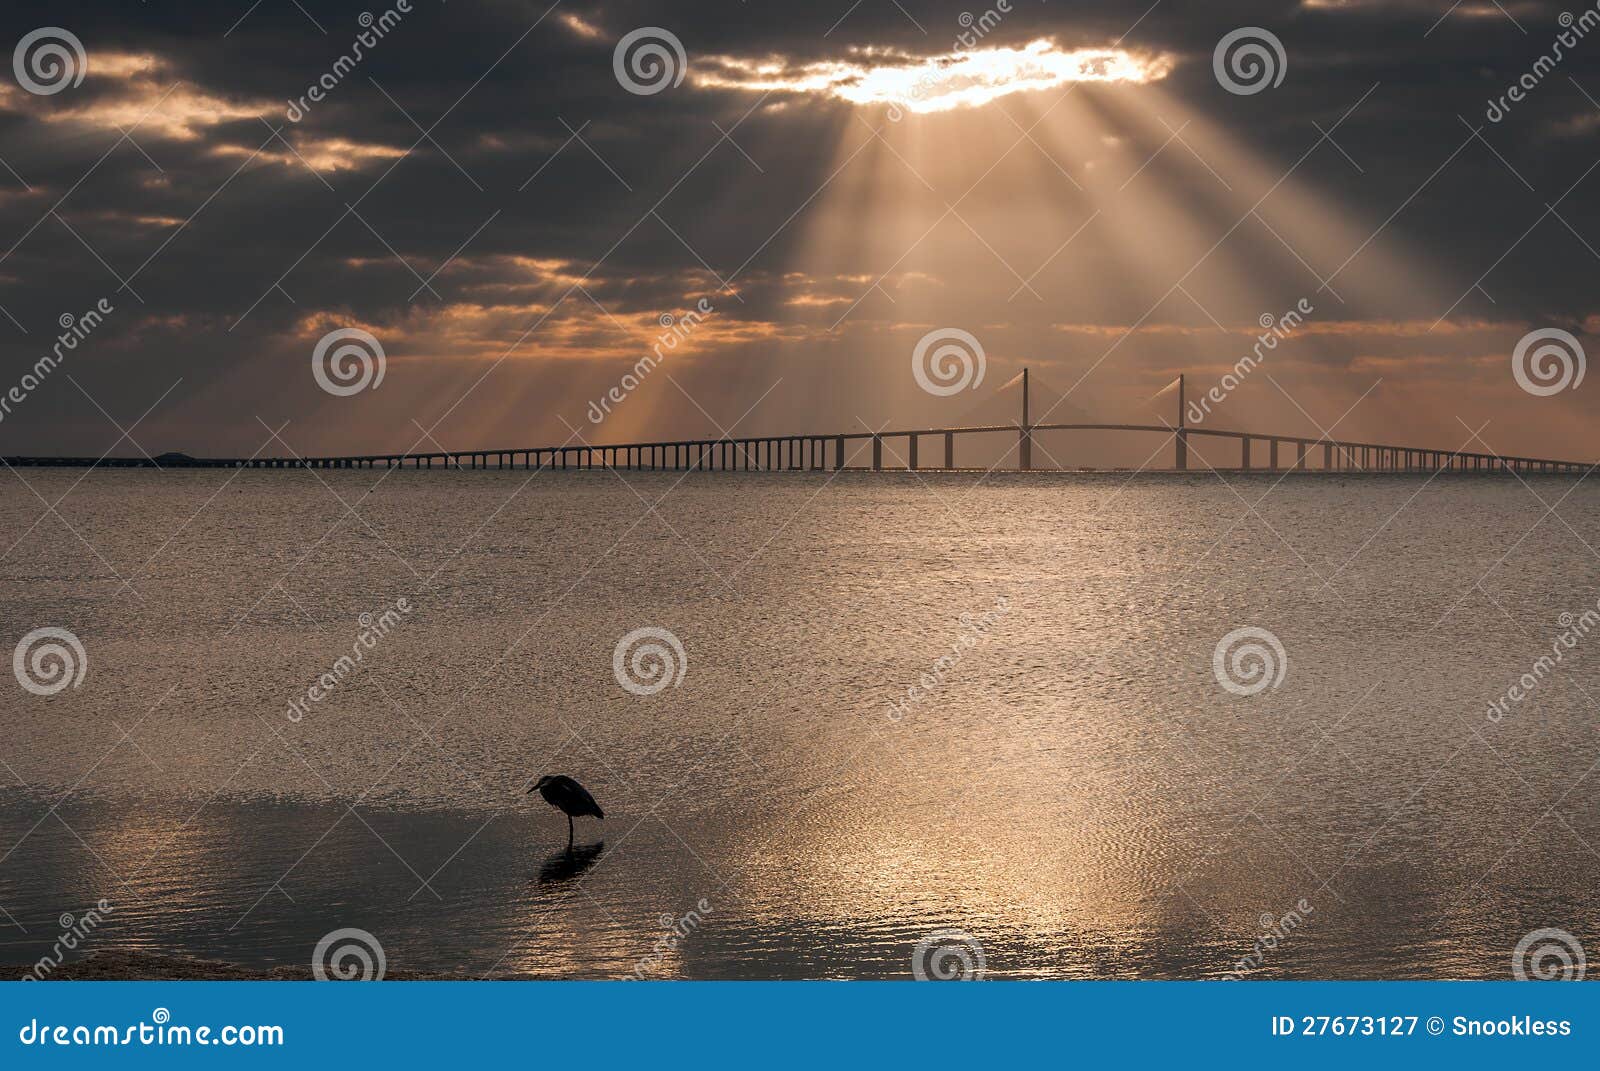 sunshine skyway bridge at dawn